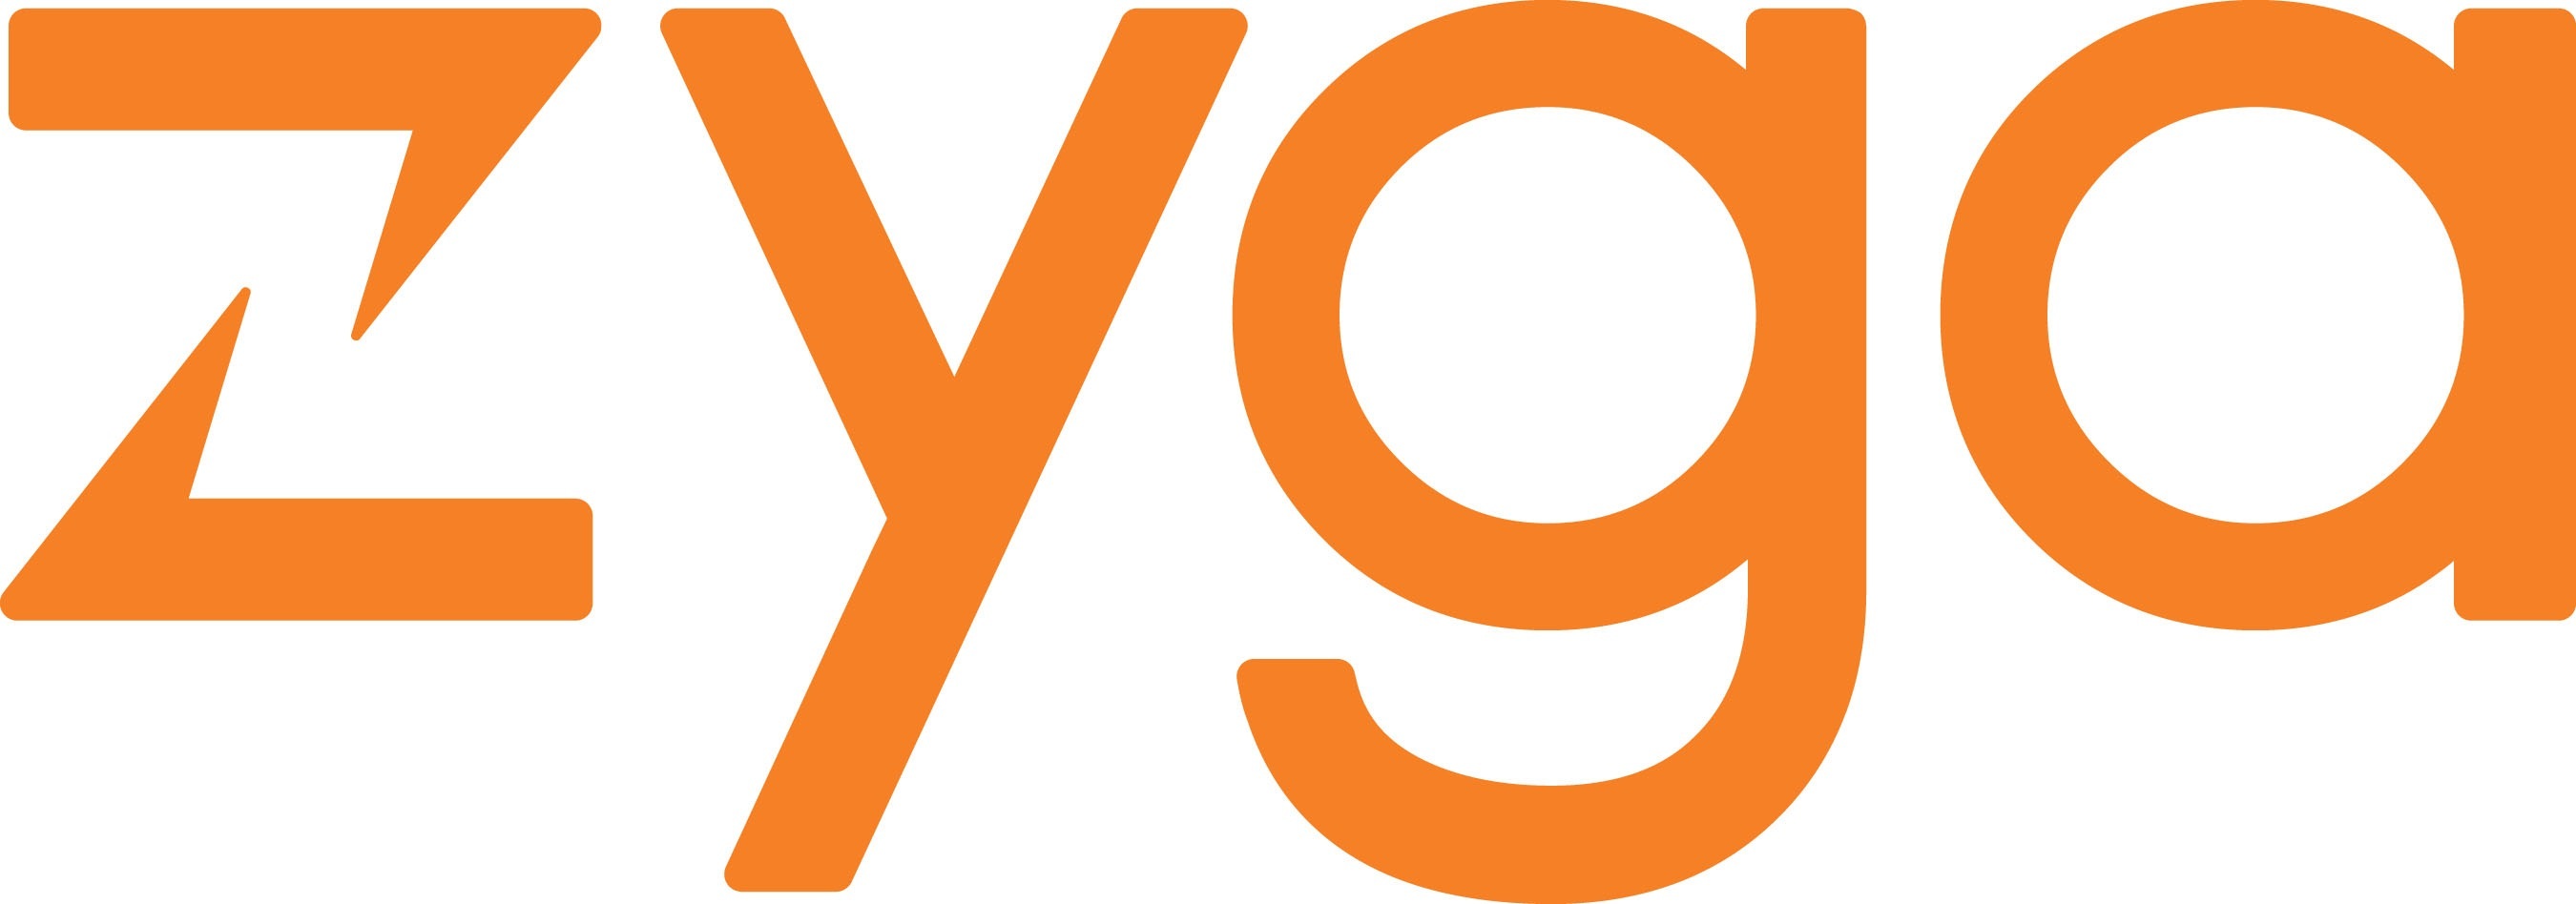 Zyga - Logo. (PRNewsFoto/Zyga Technology, Inc.) (PRNewsFoto/)